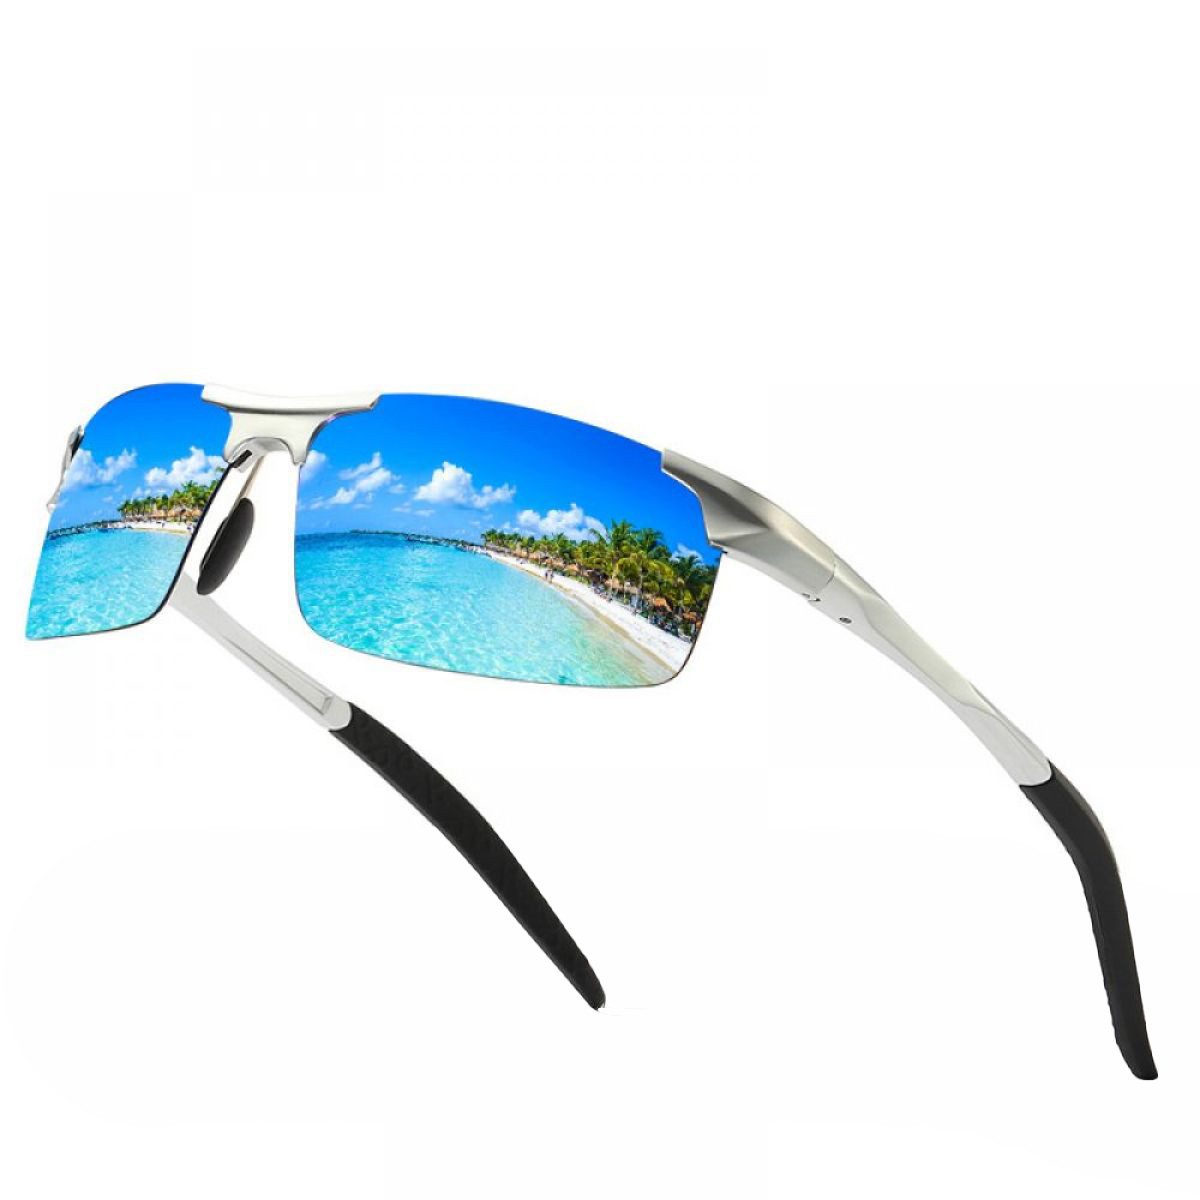 Rnemitery Sonnenbrille Polarisierte Sonnenbrille Herren Outdoor Sportbrille Fahrerbrille